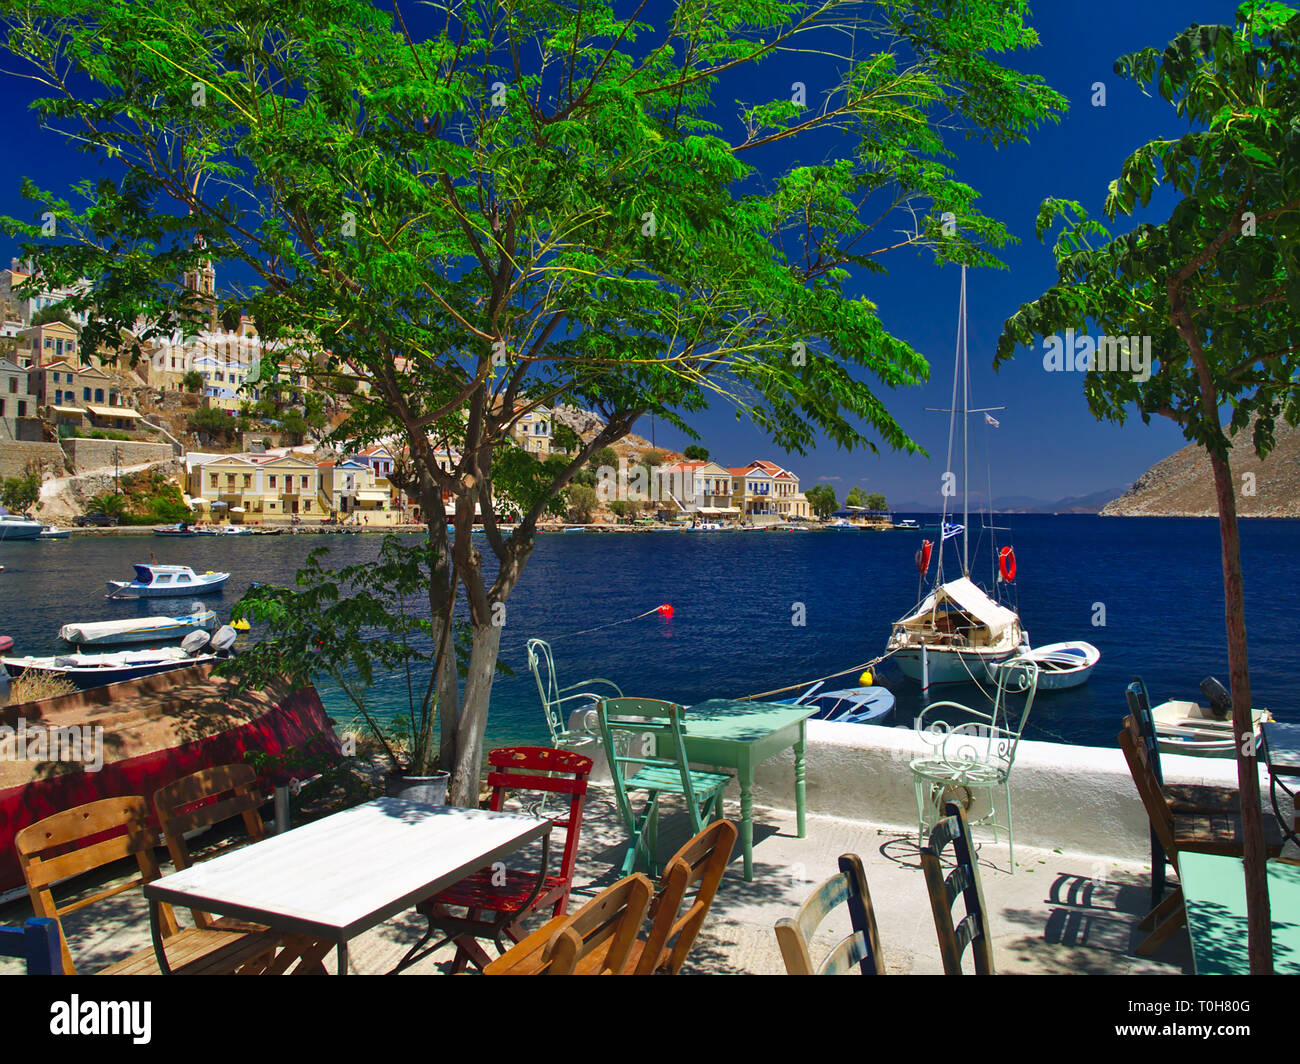 Ein Sommer Schuß von der Insel Symi in Griechenland. Blick von einem Café mit Tischen, Sesseln Boote kristallklaren Meer und den bunten Häusern. Stockfoto